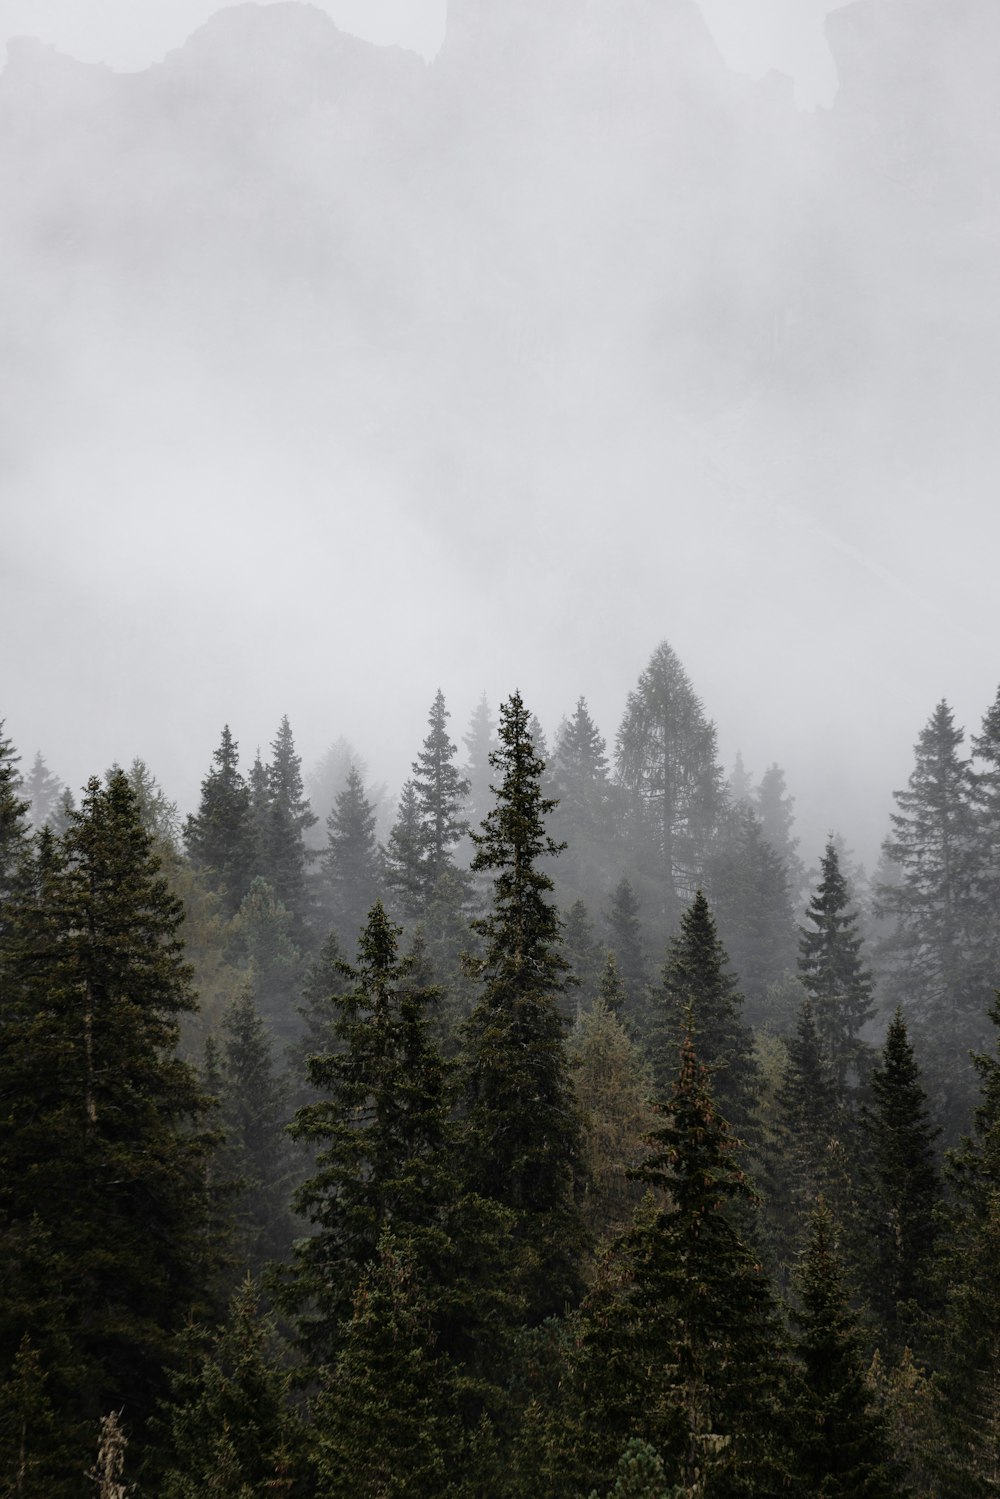 un gruppo di pini in una foresta nebbiosa